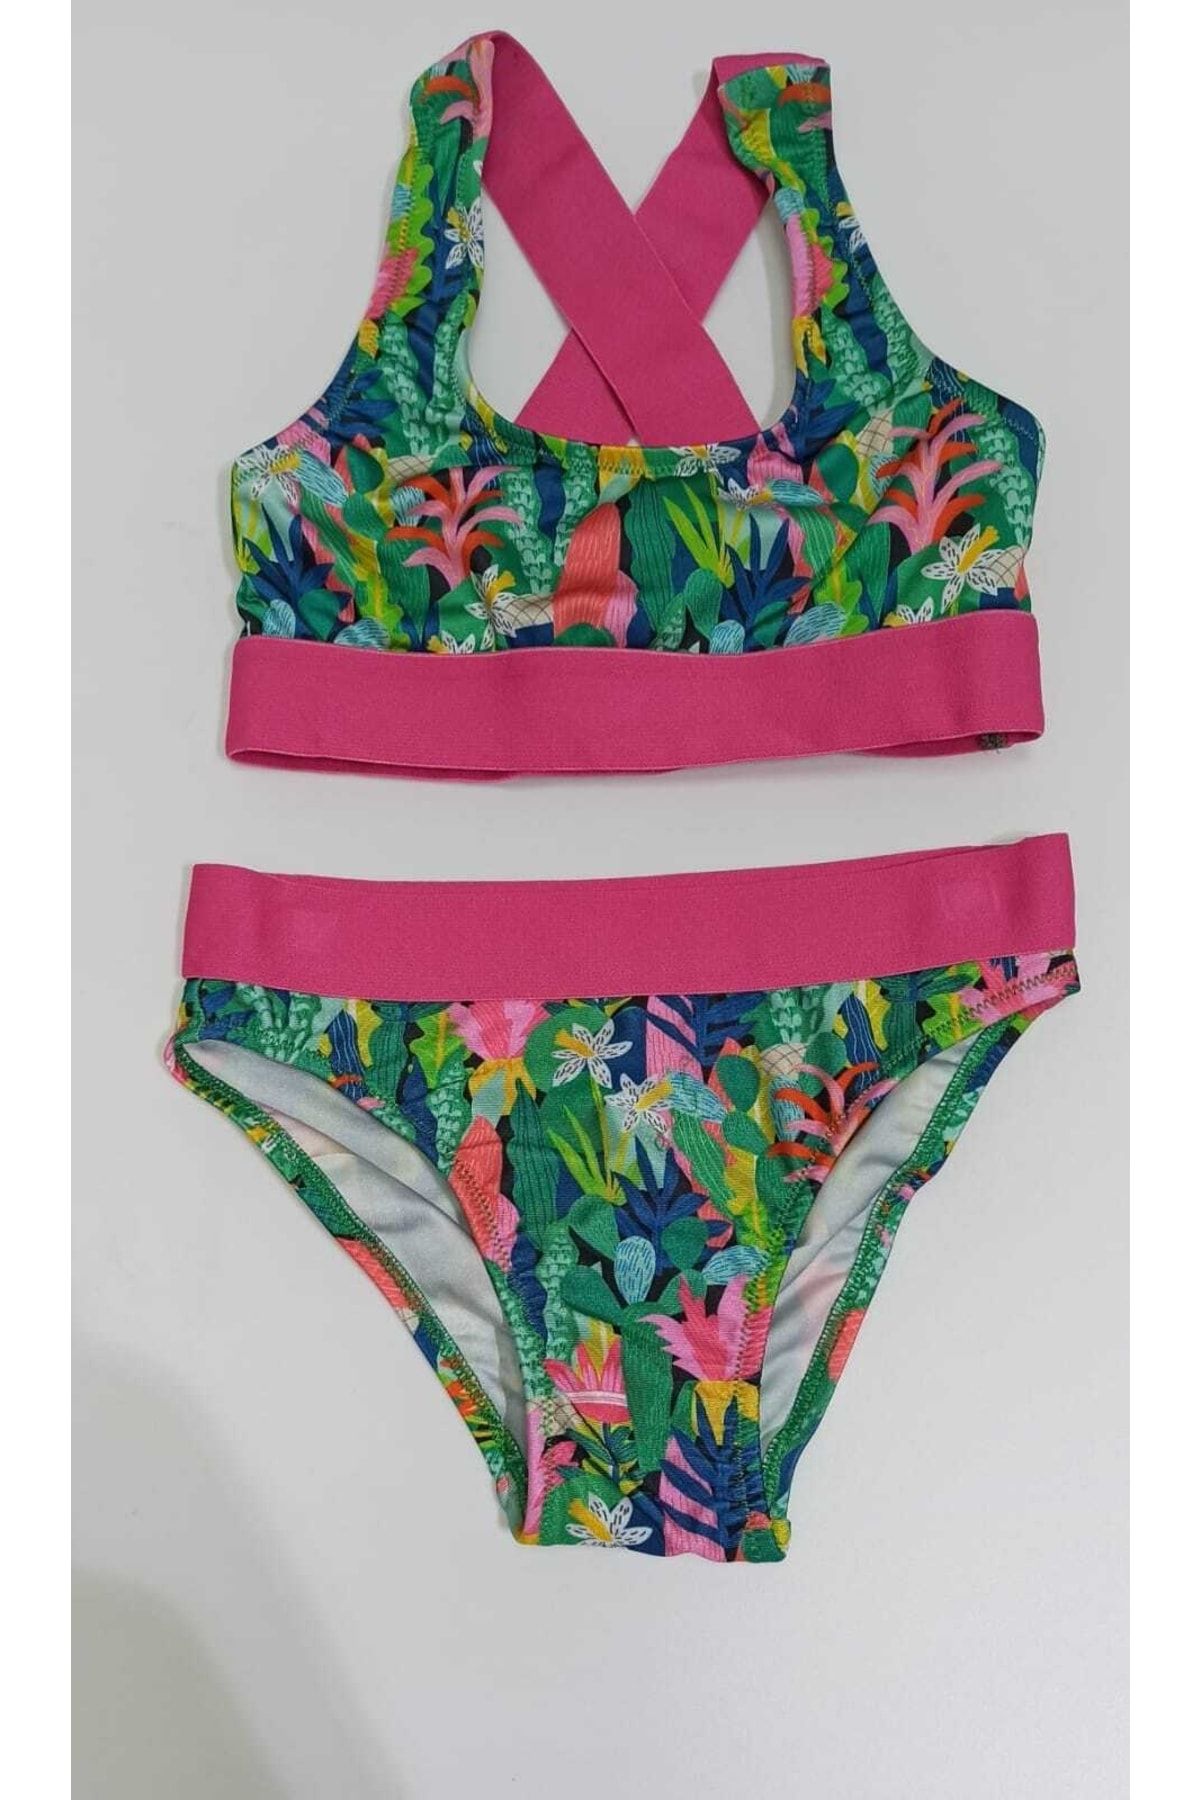 Pierre Cardin No Gossip Tropic Lastikli Büstiyer Kız Çocuk Bikini Takımı